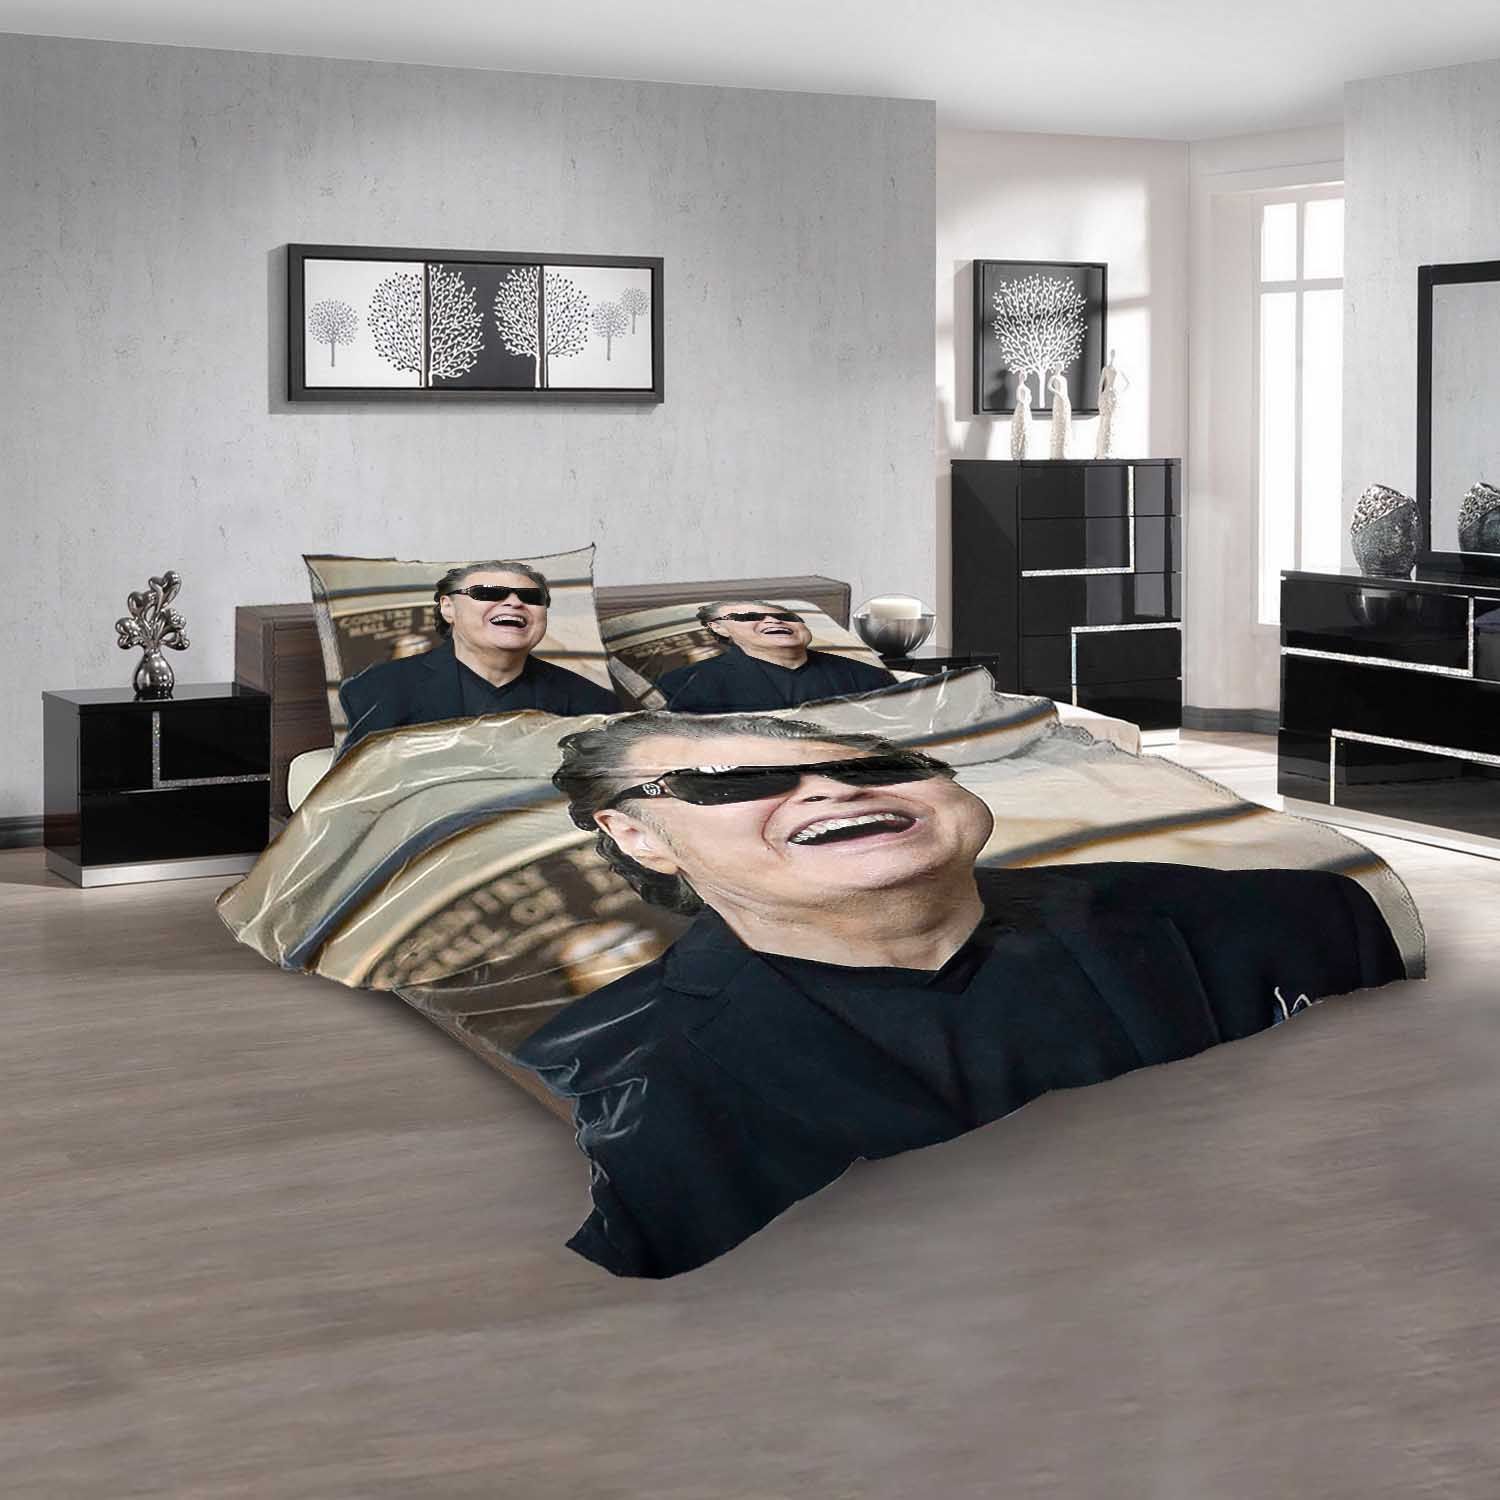 Famous Person Ronnie Milsap V Bedding Sets